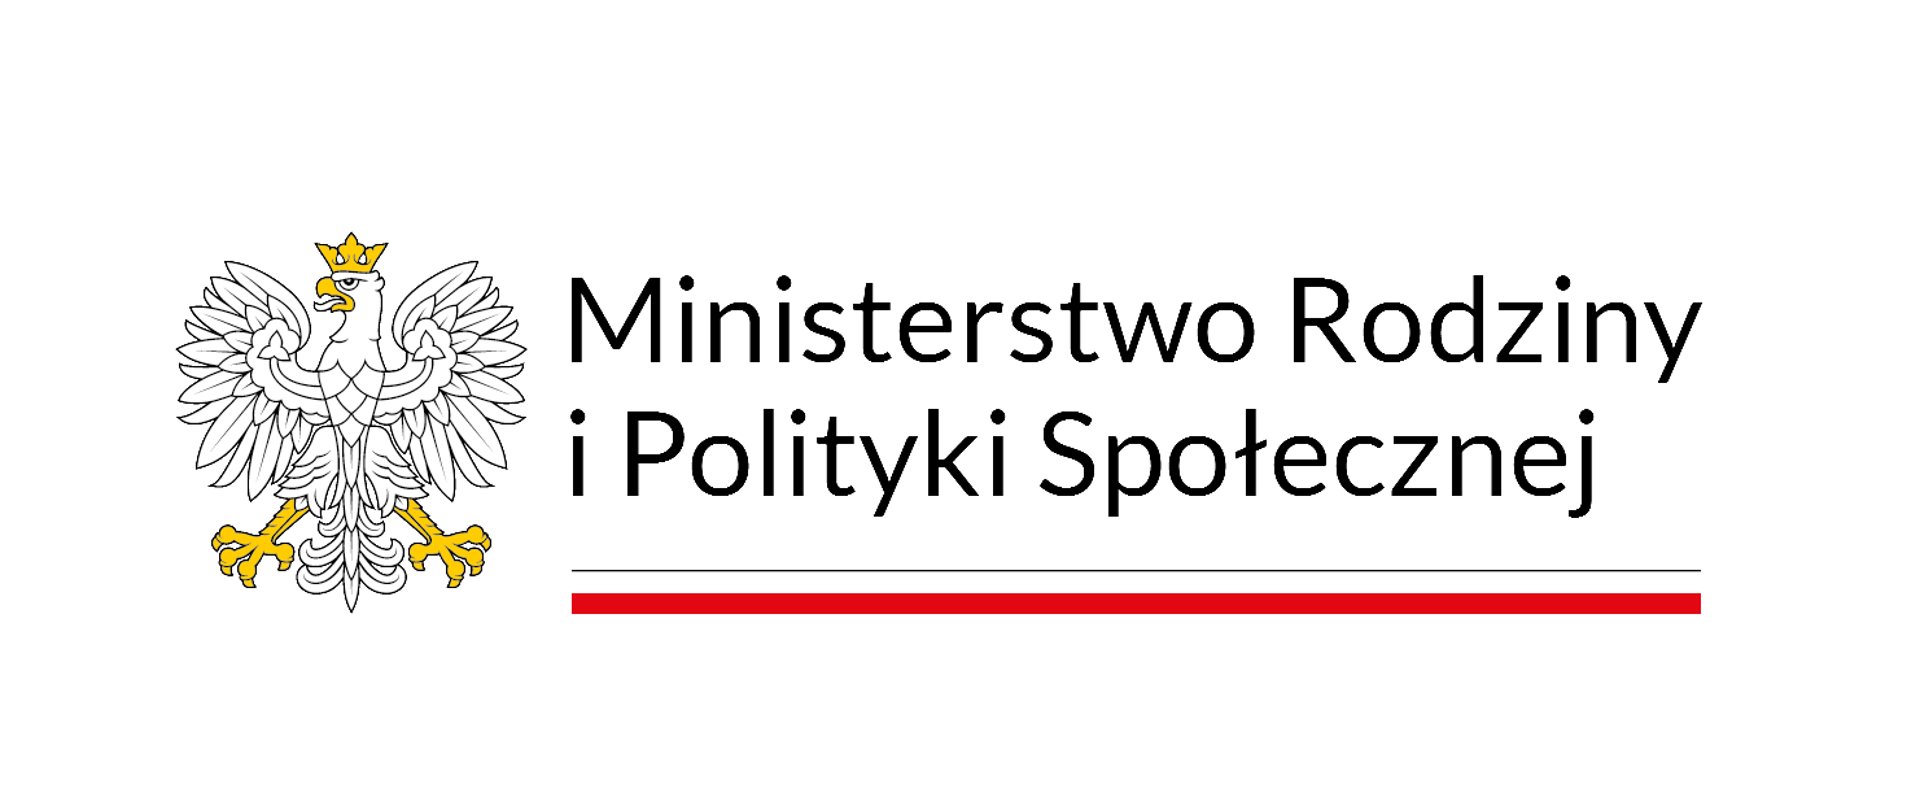 Logotyp Ministerstwa Rodziny i Polityki Społecznej 